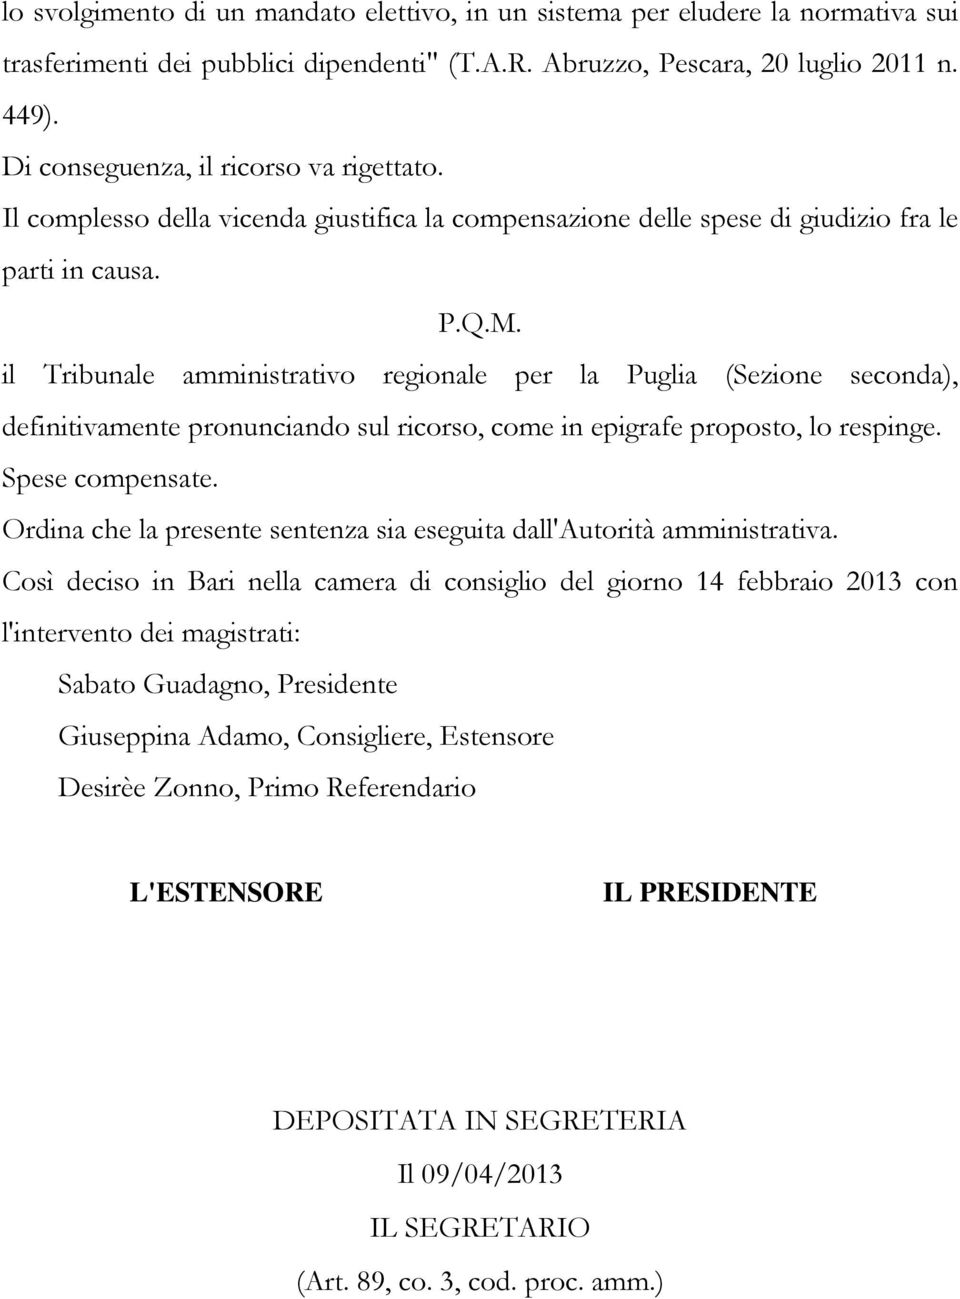 il Tribunale amministrativo regionale per la Puglia (Sezione seconda), definitivamente pronunciando sul ricorso, come in epigrafe proposto, lo respinge. Spese compensate.